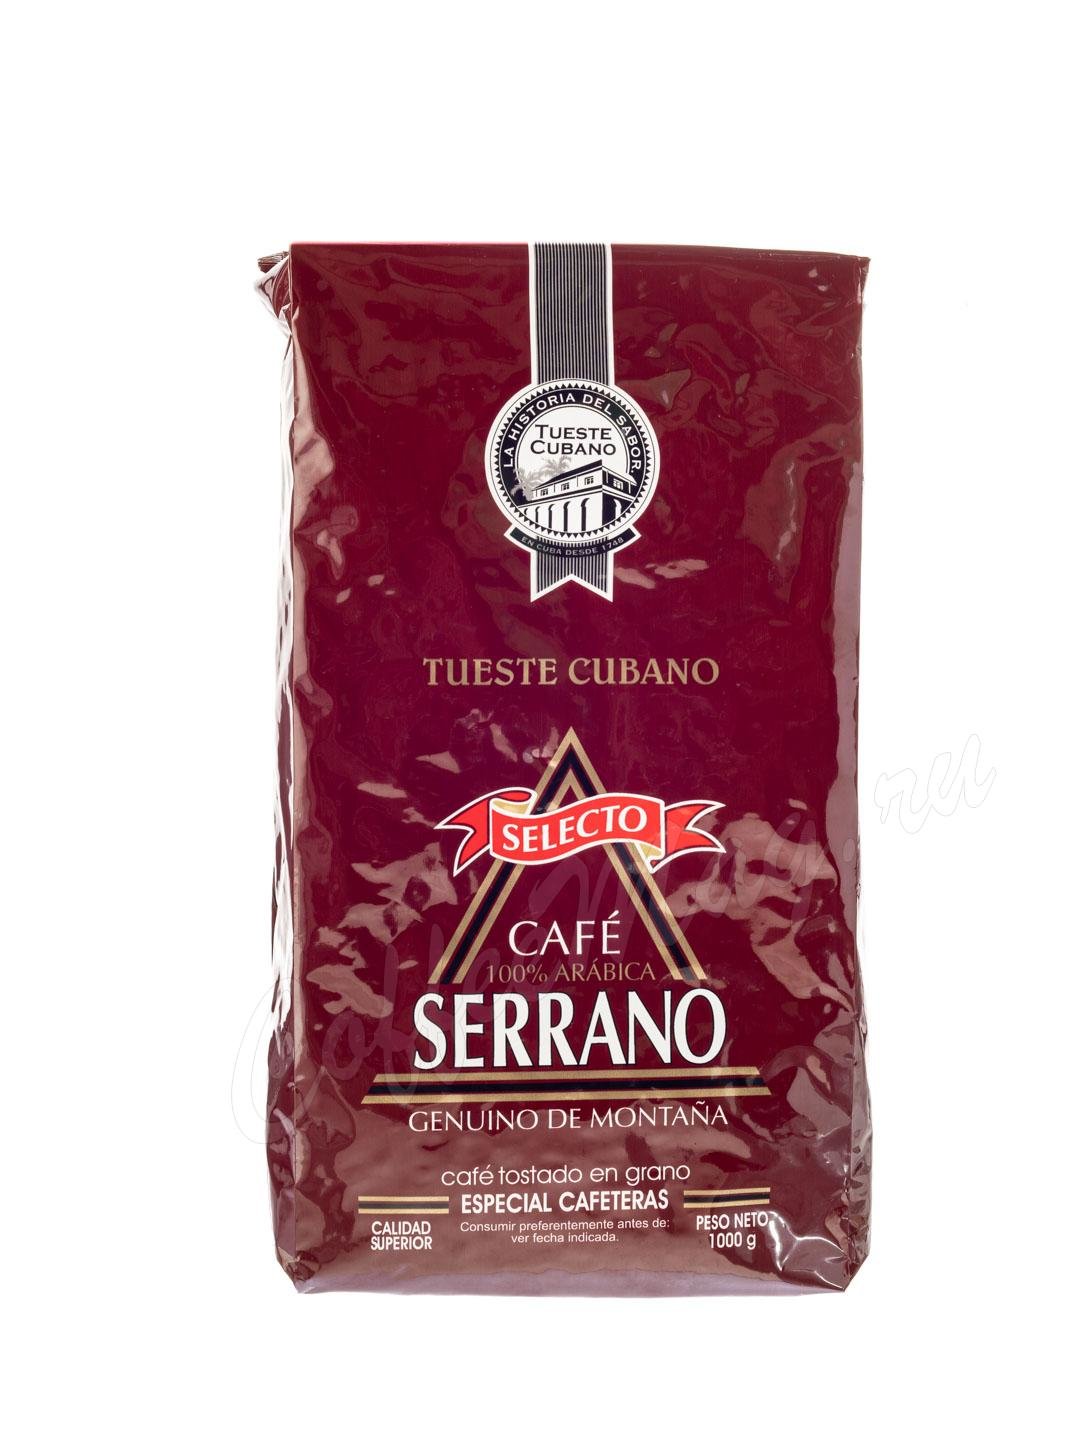 Кофе Serrano (Серрано) в зернах 1 кг